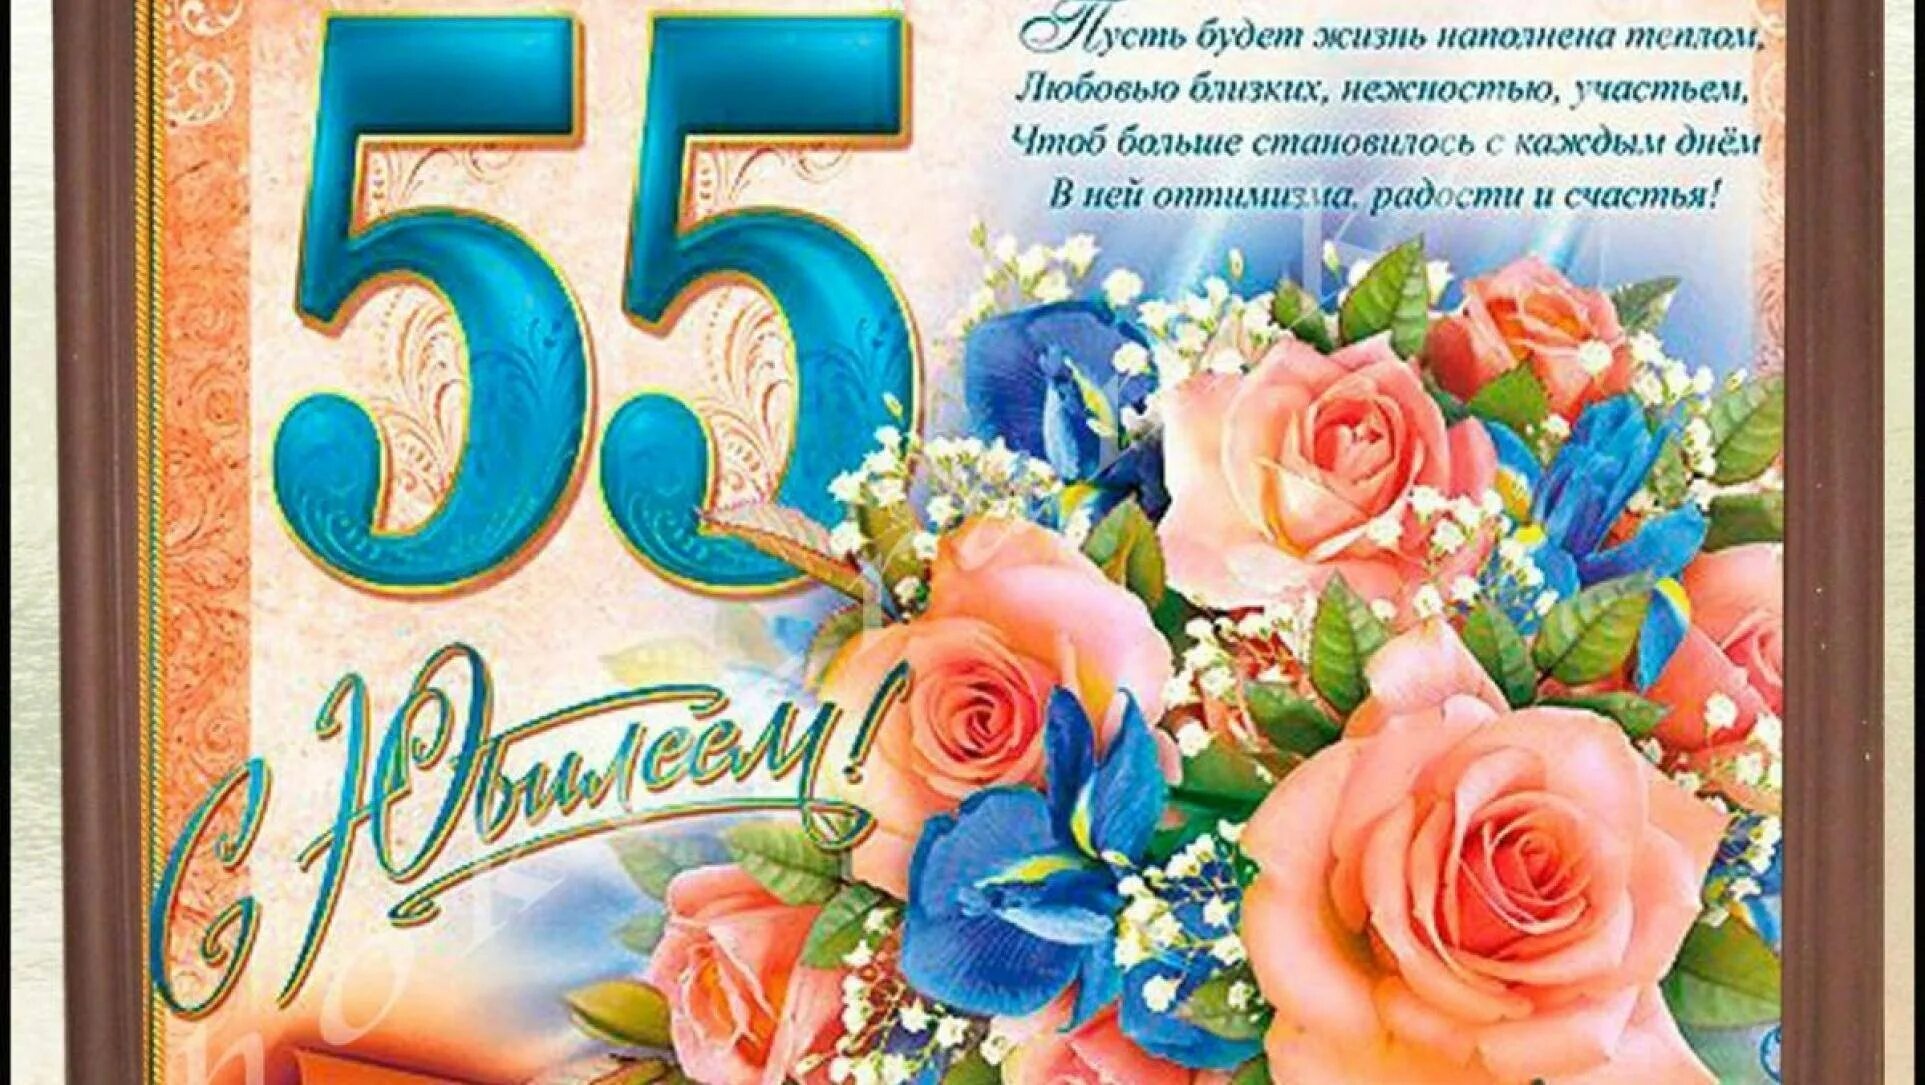 55 лет открытка с днем рождения красивая. С юбилеем 55. Поздравление с юбилеем 55 женщине. Открытка "с юбилеем! 55". Открытка с юбилеем 55 лет женщине с поздравлением.